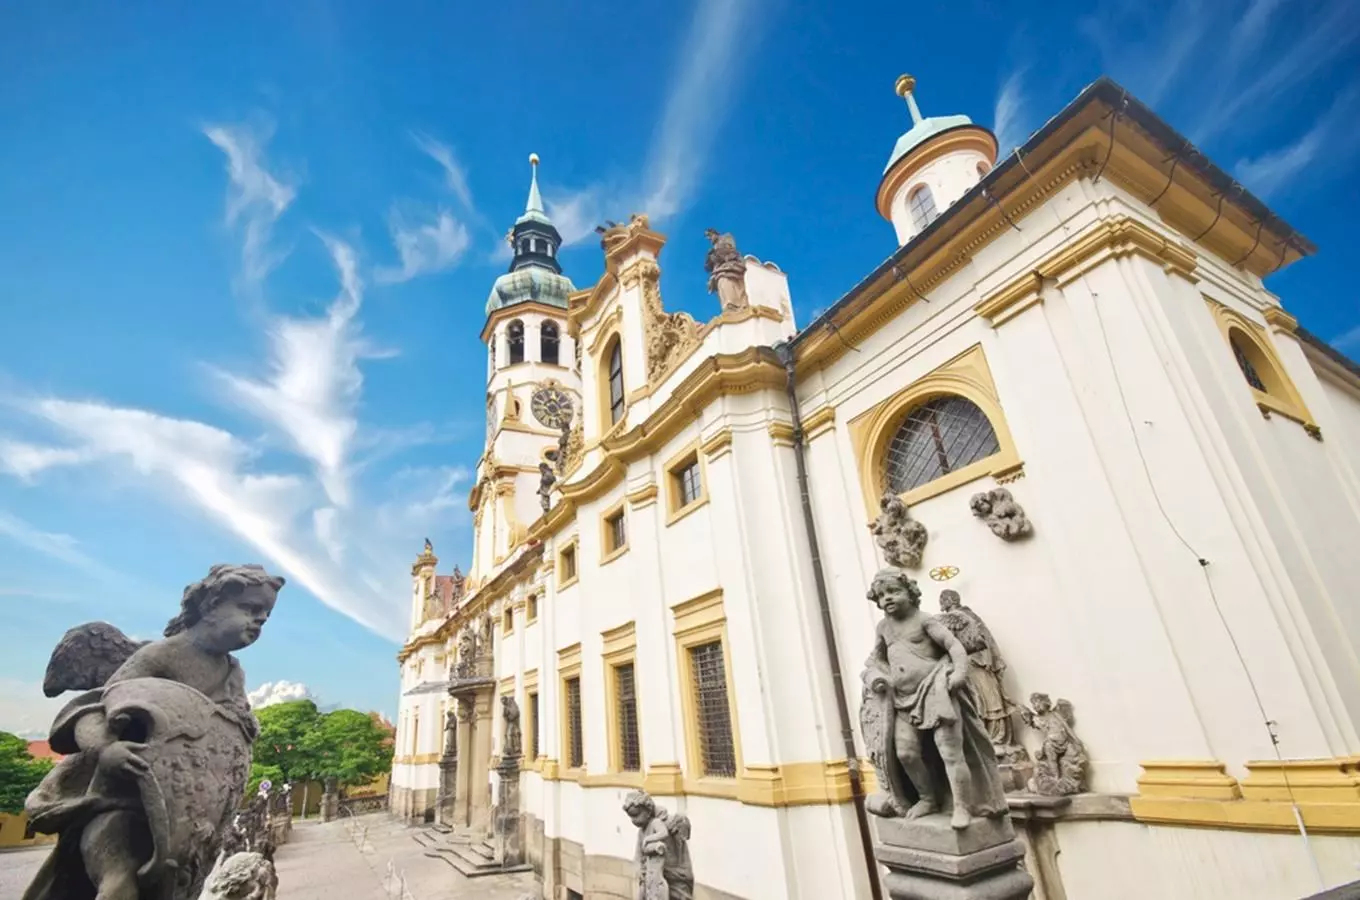 Procházka nejen za nejkrásnějšími barokními chrámy v Praze